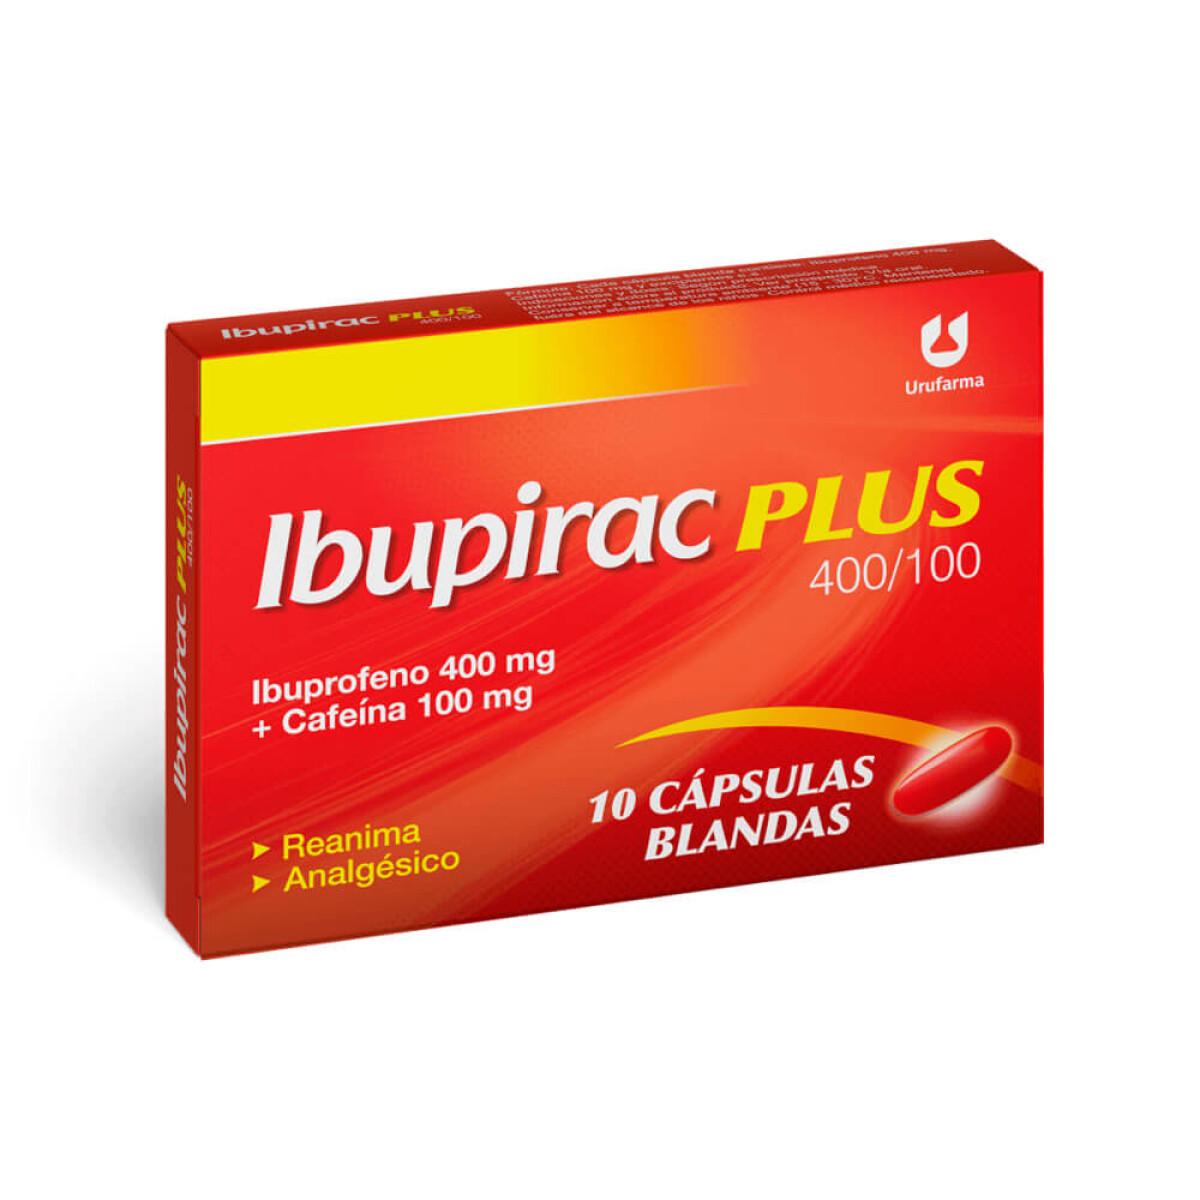 Ibupirac Plus X 10 Capsulas 